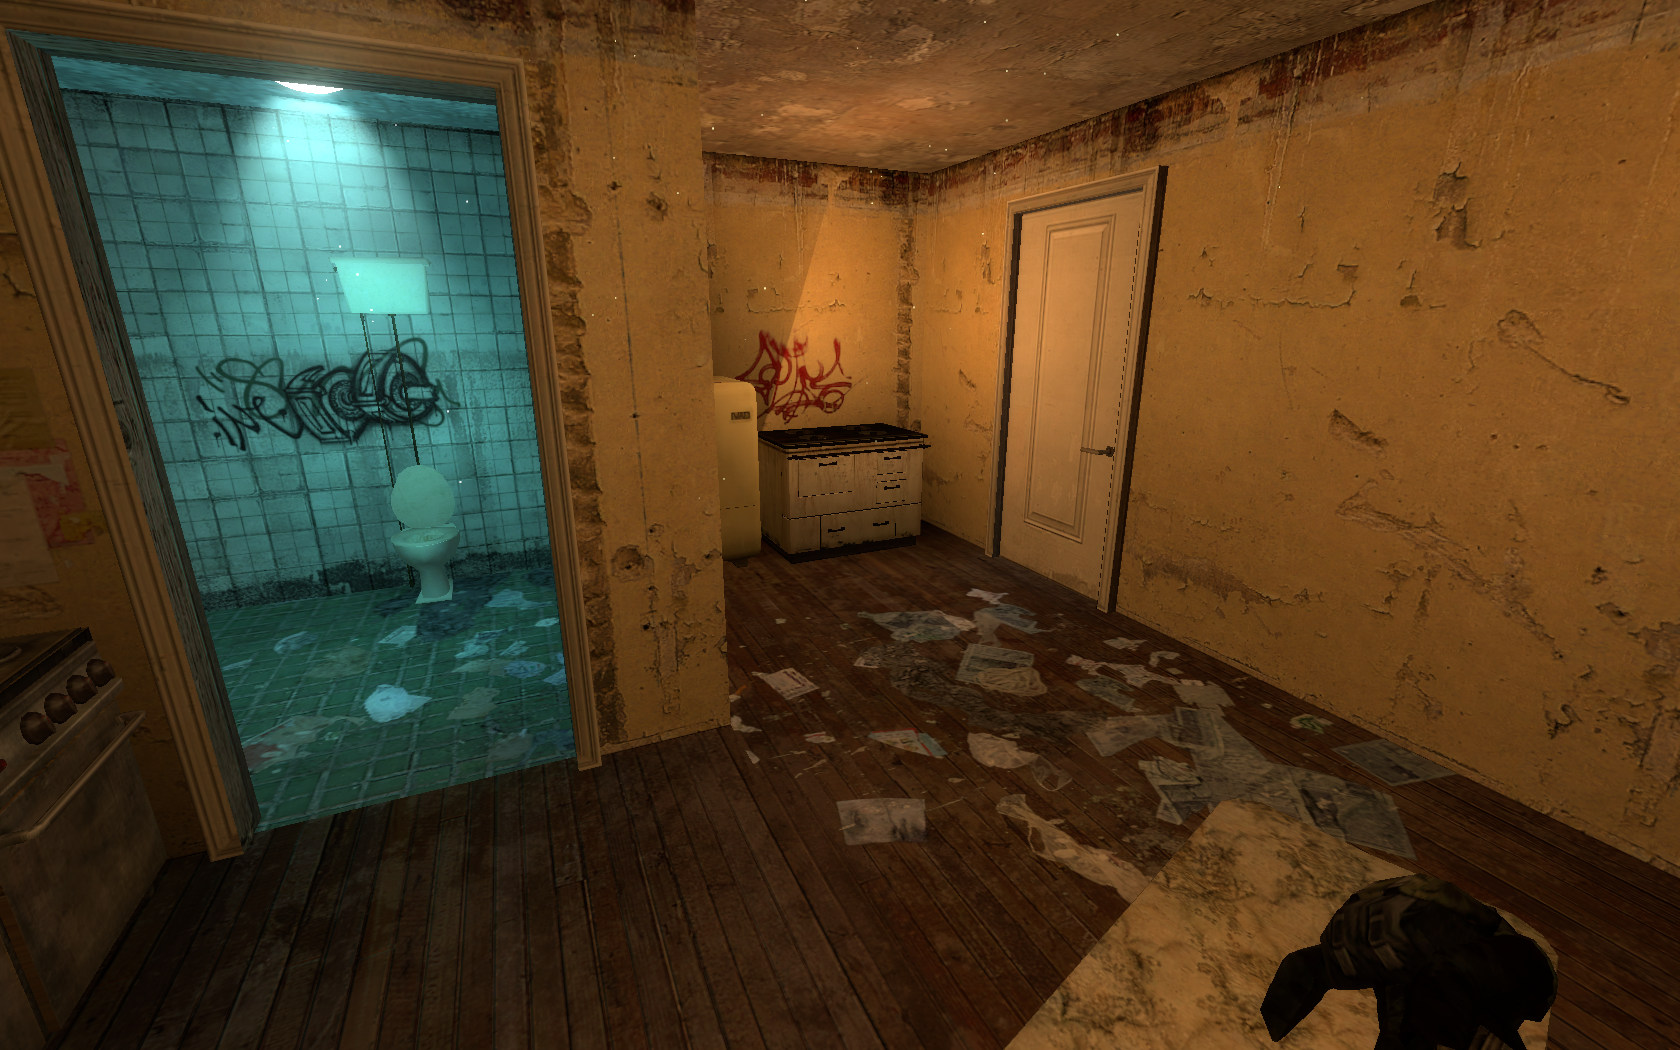 Half Life 2: Coalition mod for Half-Life 2 - ModDB